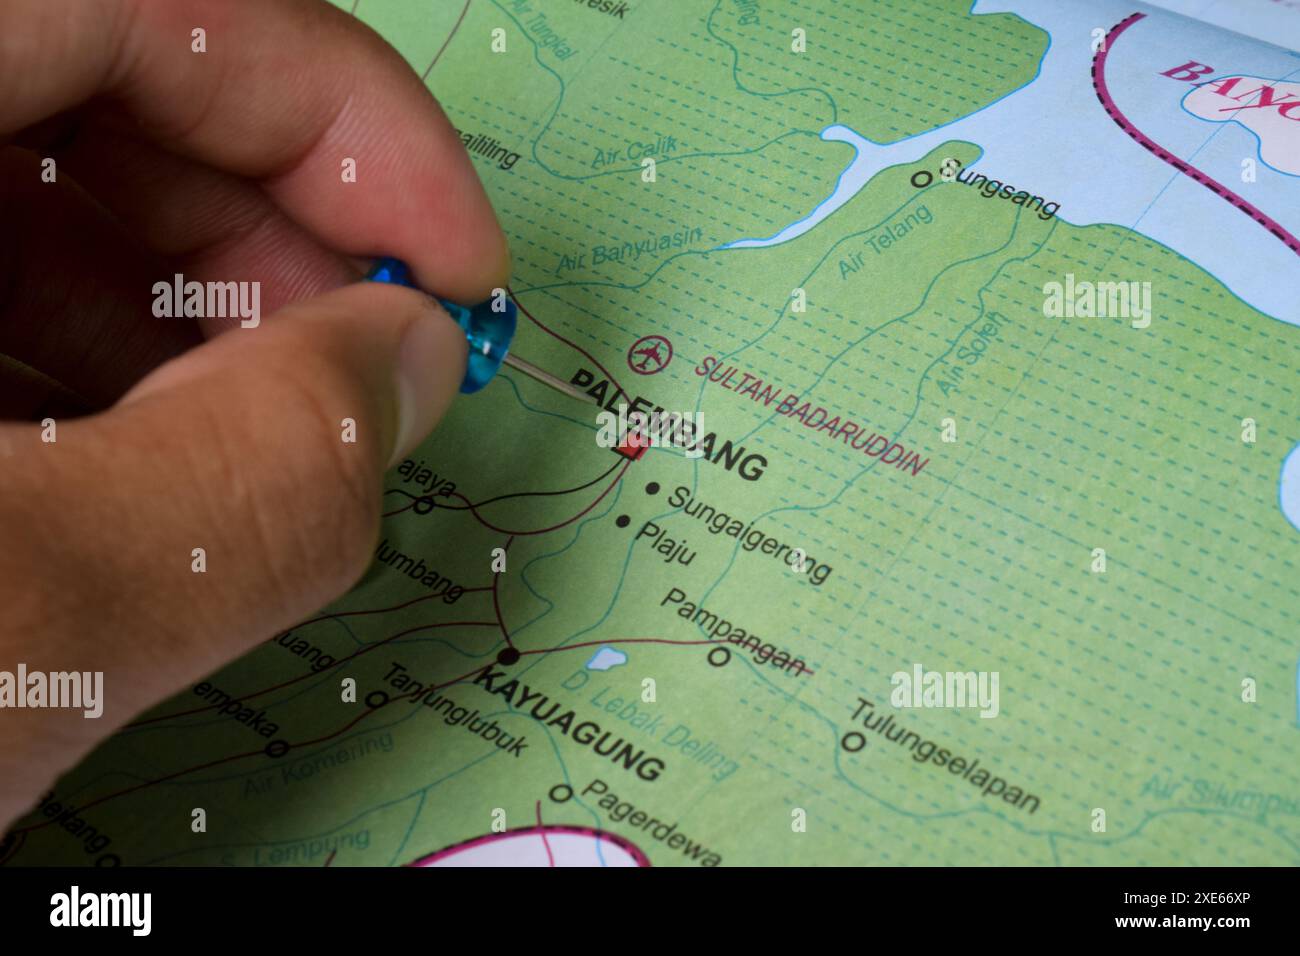 Pin on Map Palembang City, è la capitale della provincia di Sumatra meridionale, Indonesia Foto Stock